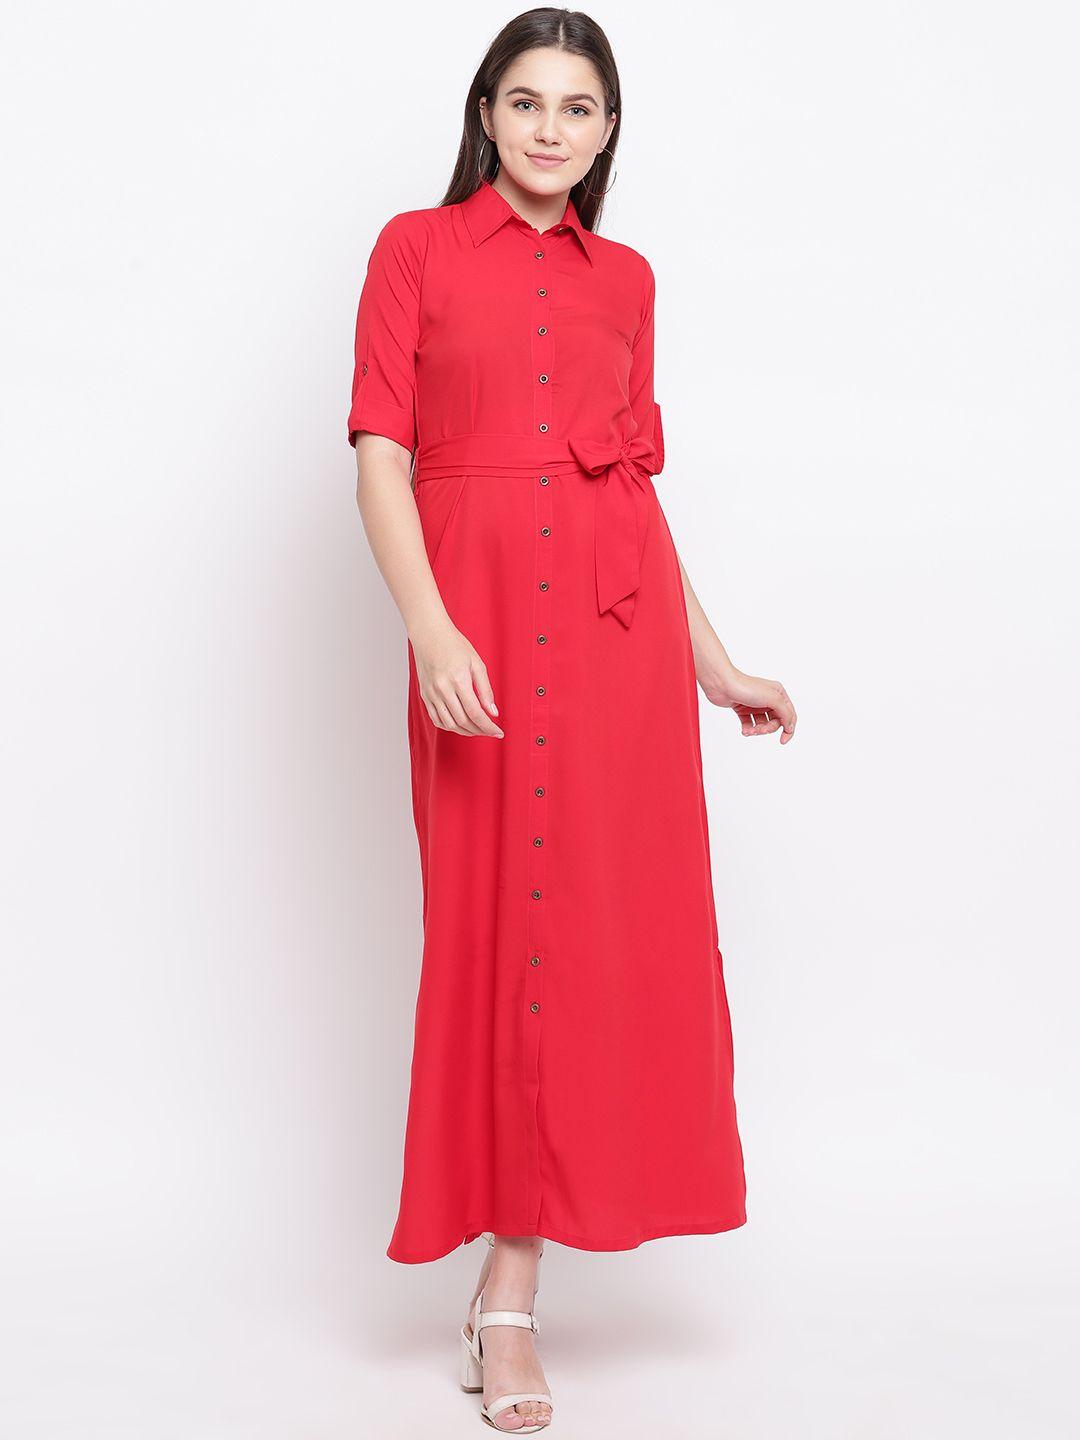 uptownie lite women red button down shirt maxi dress